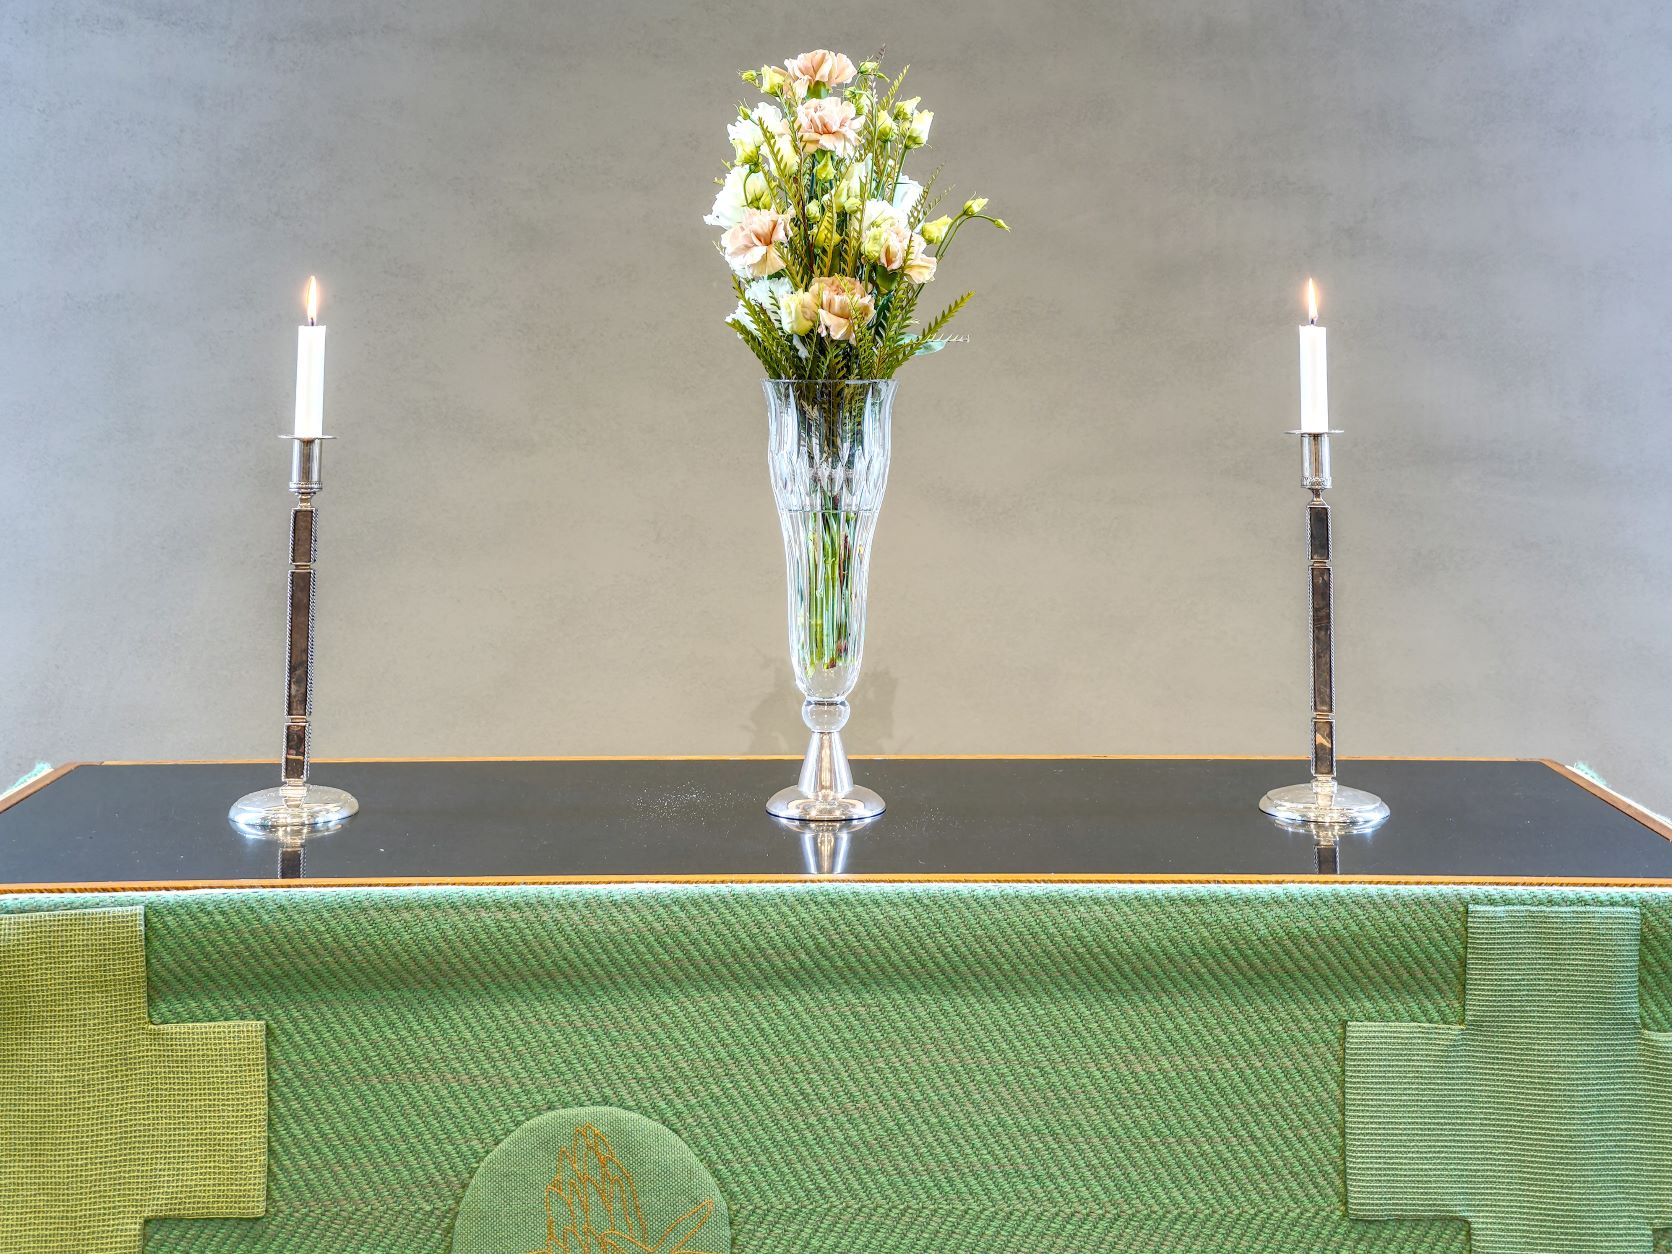 Kuvassa on Töölön kirkon alttaripöytä vihreässä liturgisessa vaatteessa. Alttarilla on kukkakimppu, jonka molemmin puolin palaa kynttilä.